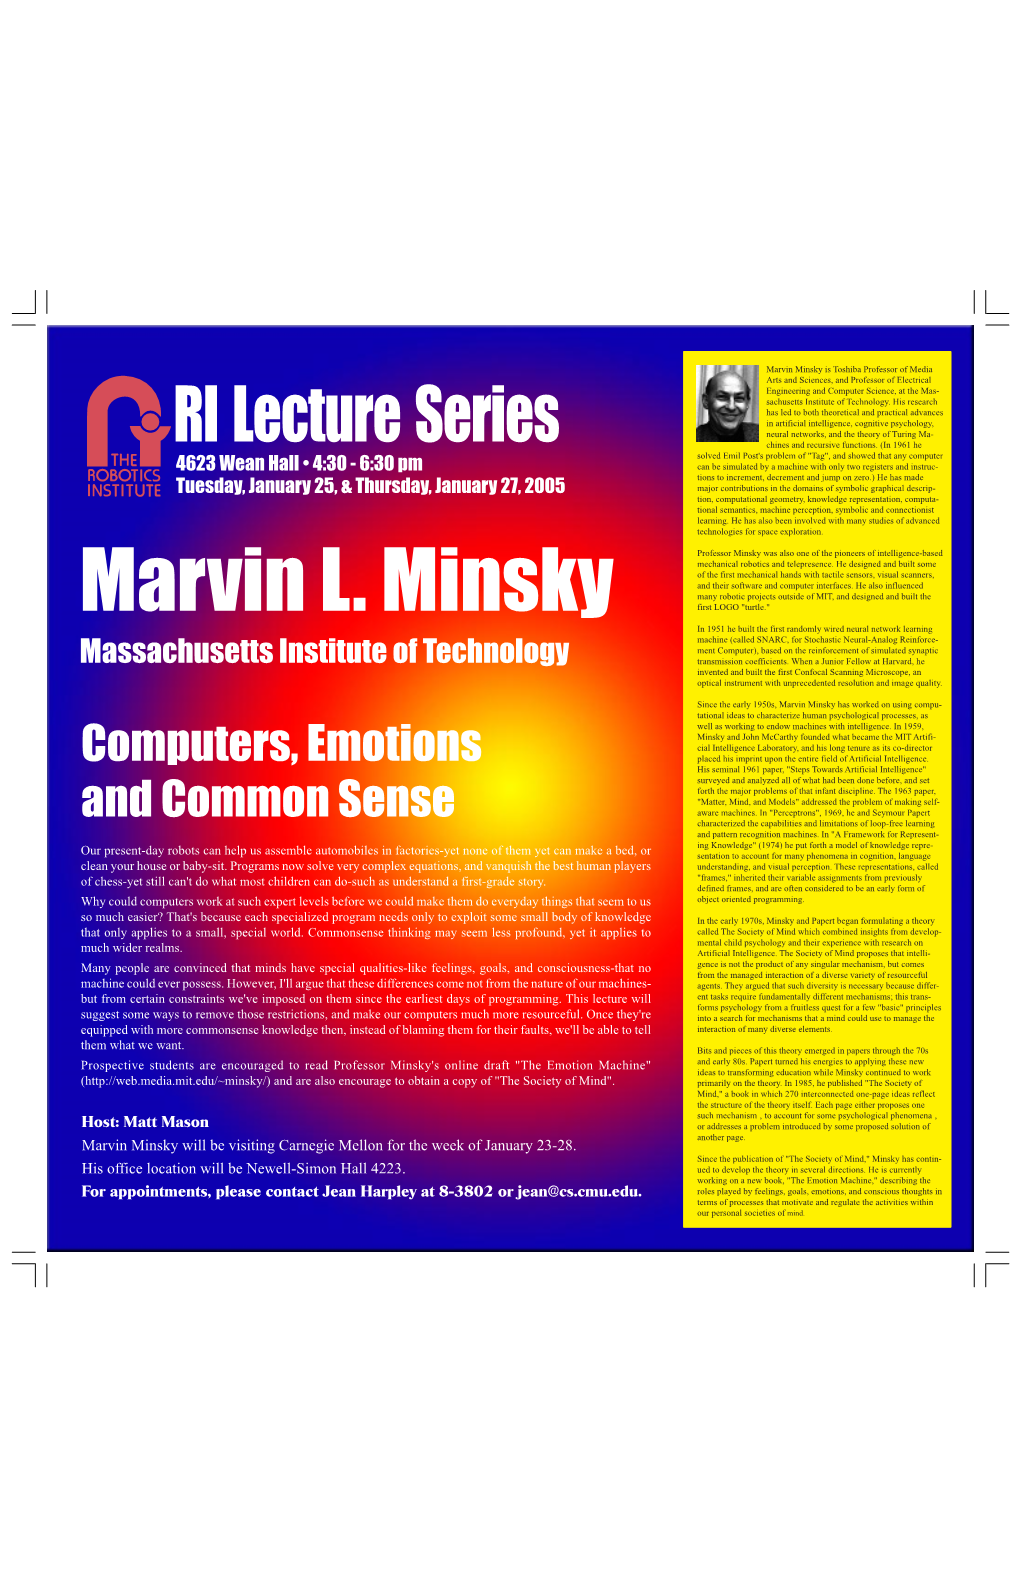 Marvin L. Minsky